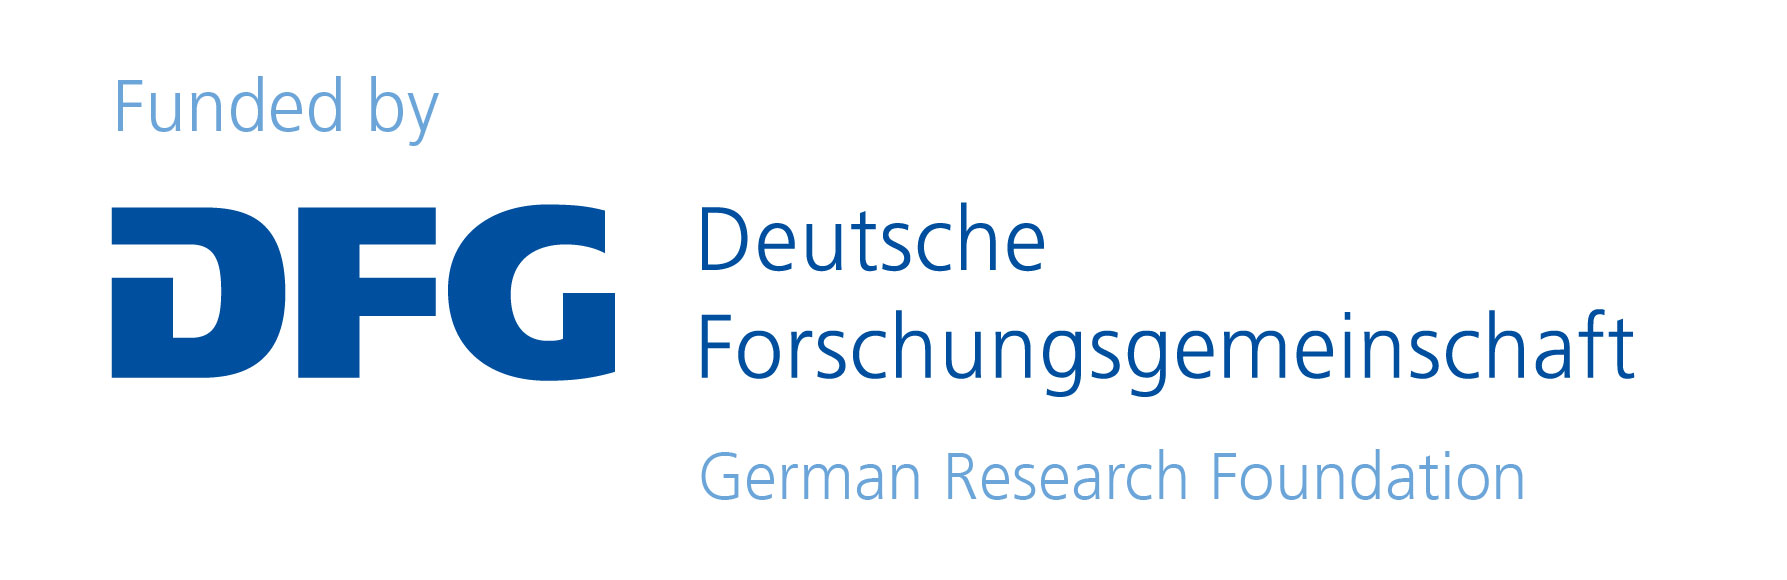 Deutsche
  Forschungsgemeinschaft (German Research Foundation)